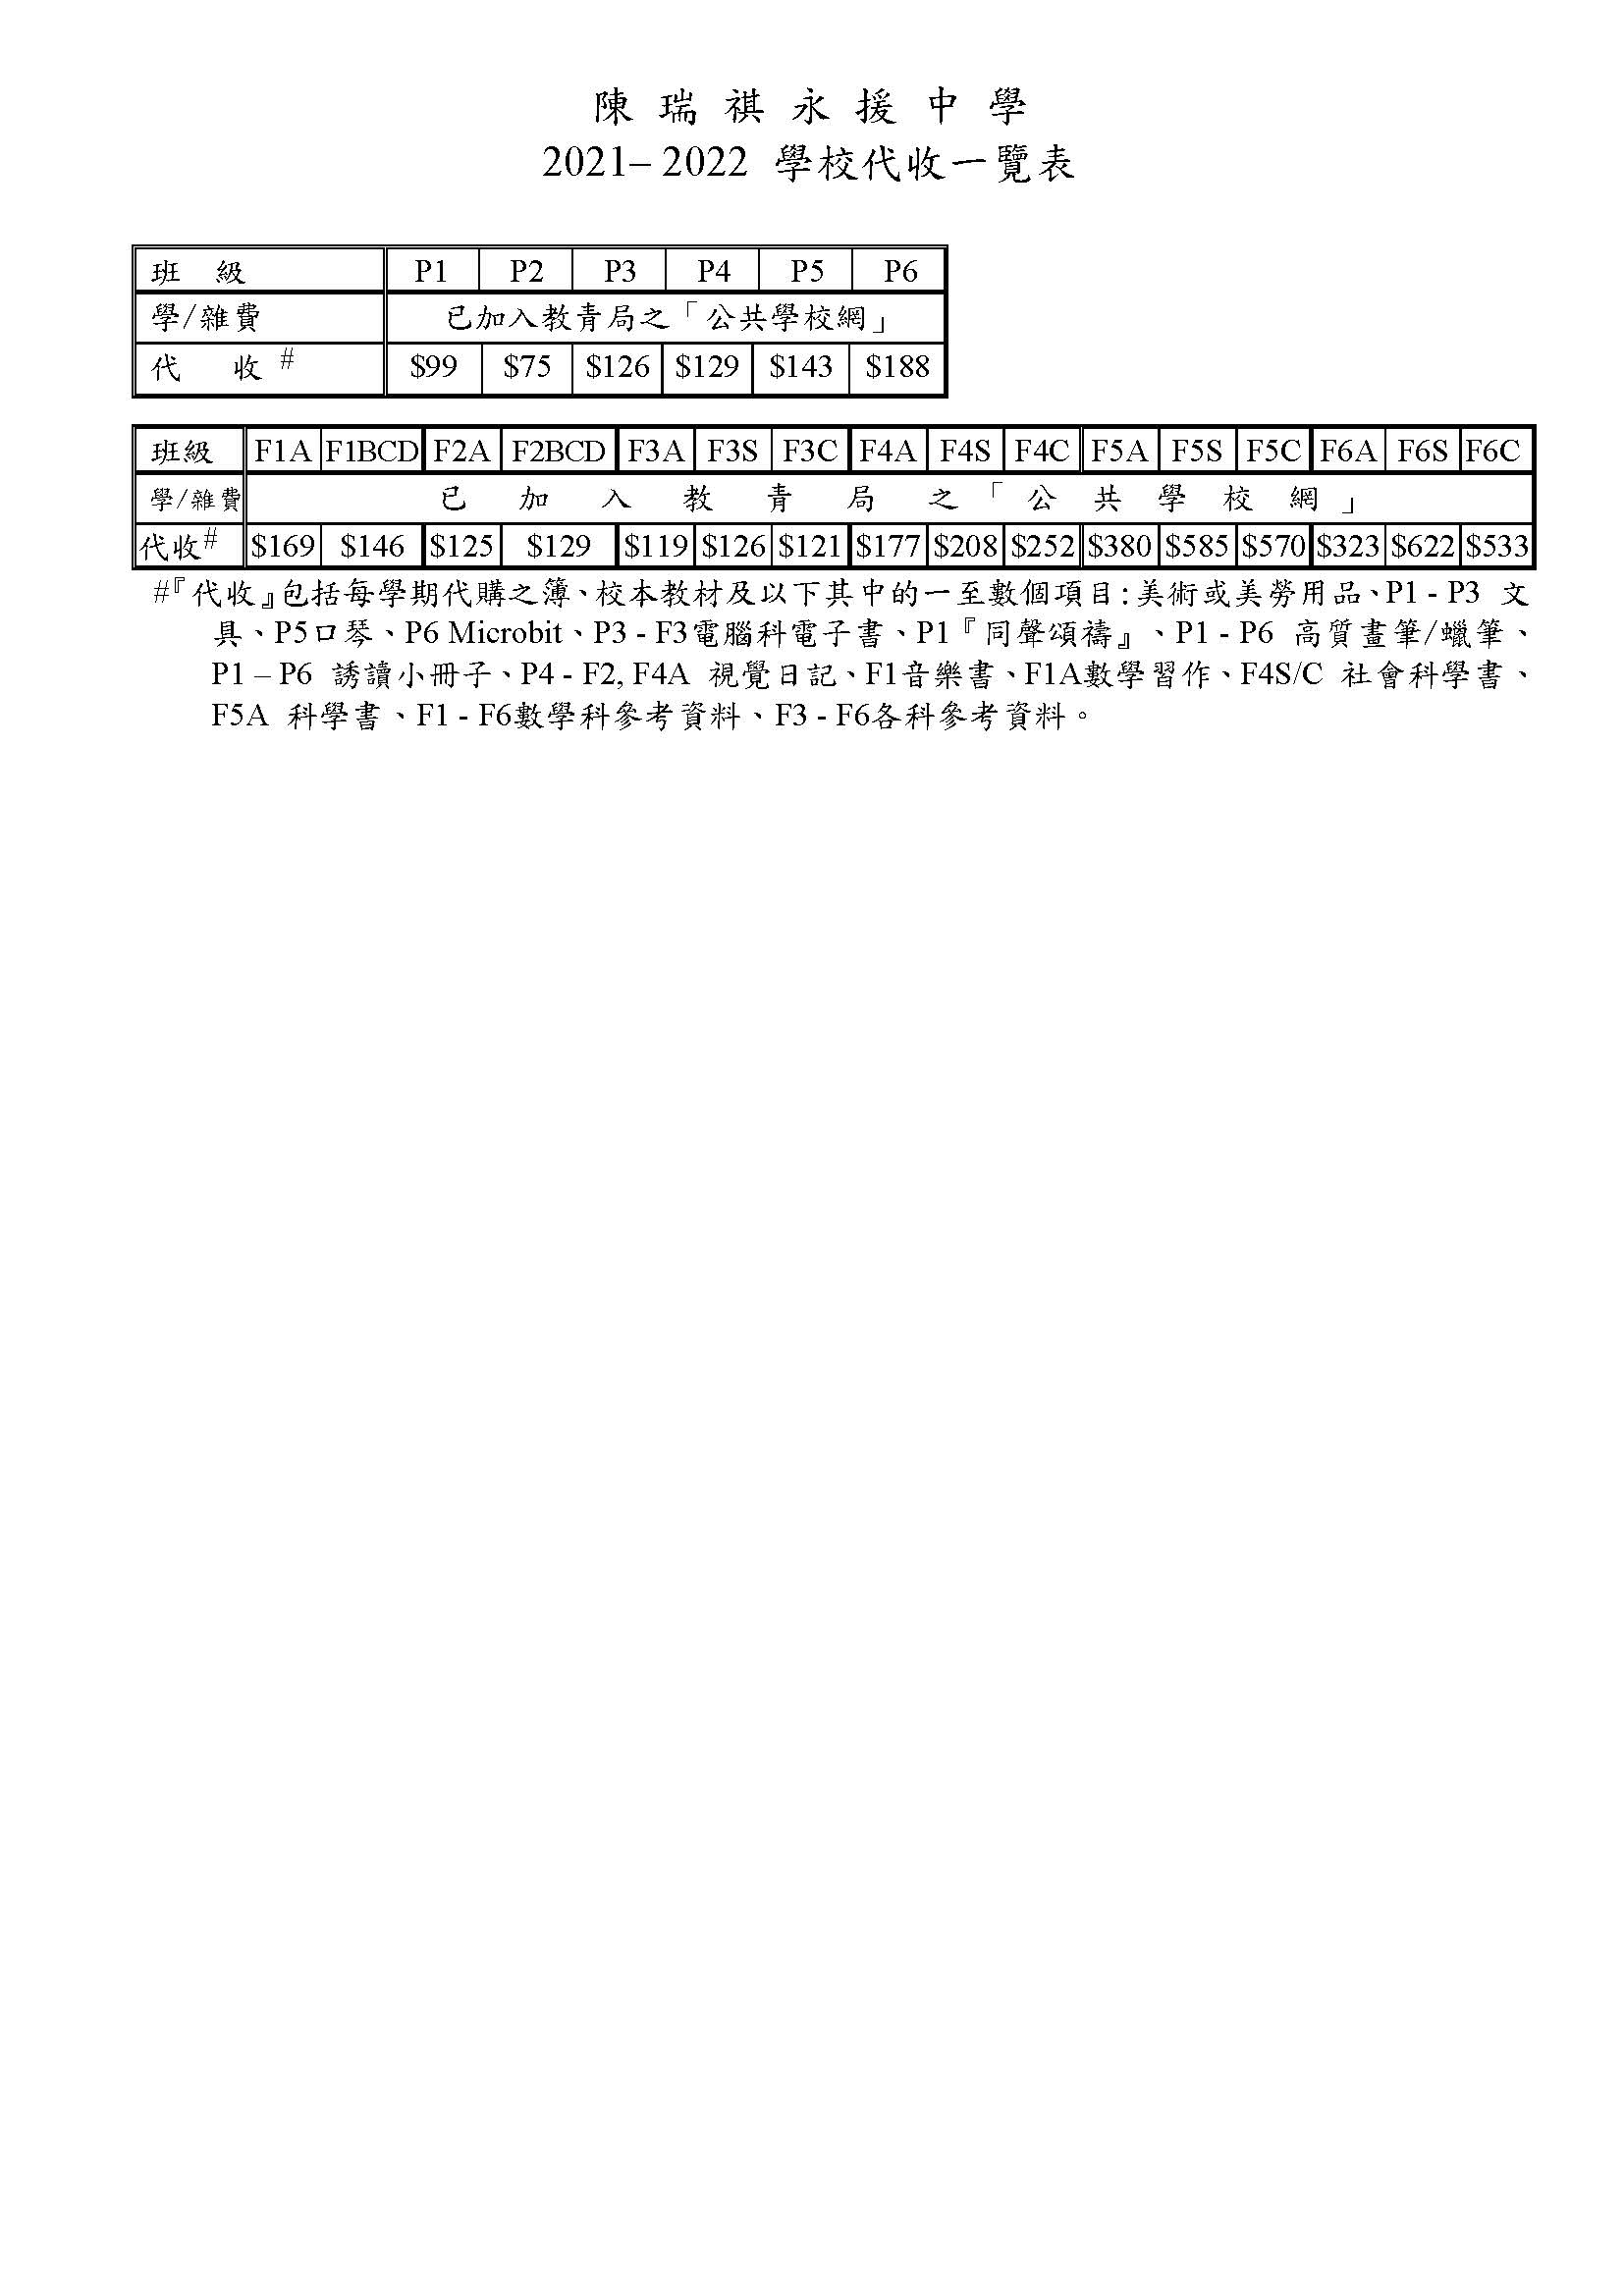 陳瑞祺永援中學2021-2022學校代收一覽表.jpg